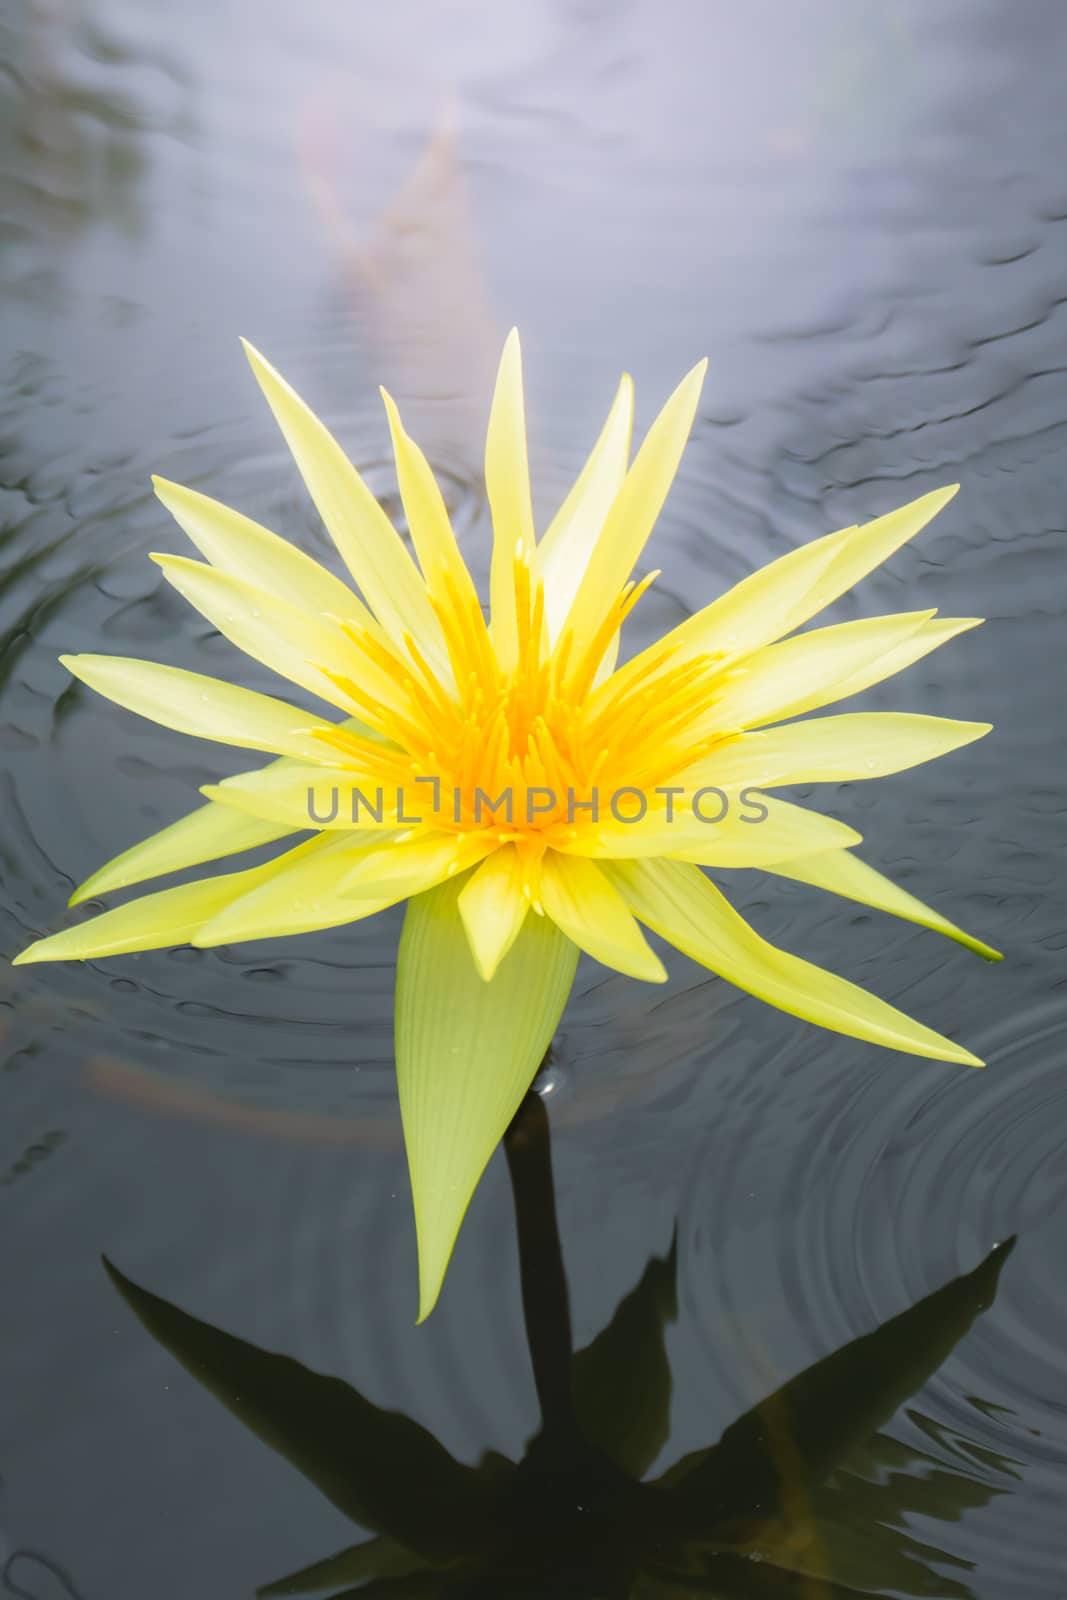 Lotus flowers blooming on the pond in summer by teerawit